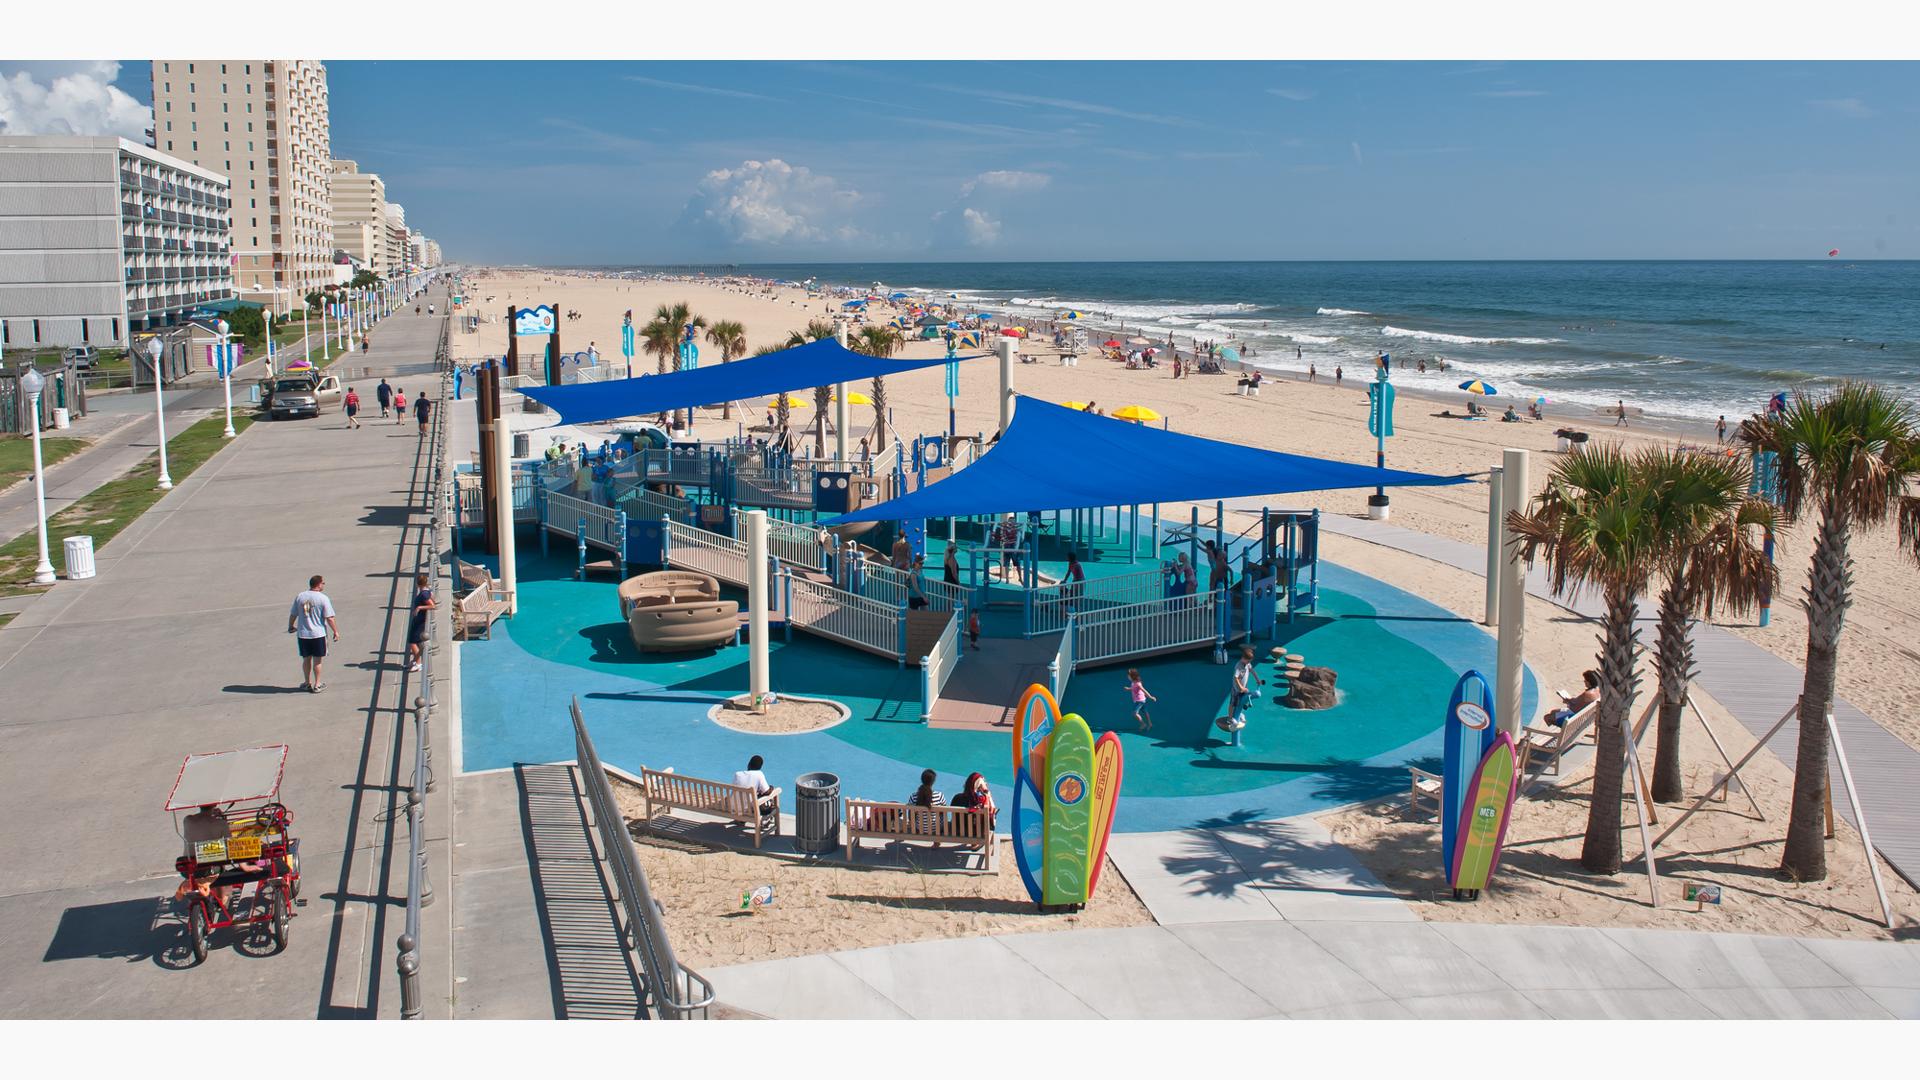 JT's Grommet Island Beach Park & Playground for Every BODY Virginia Beach, VA